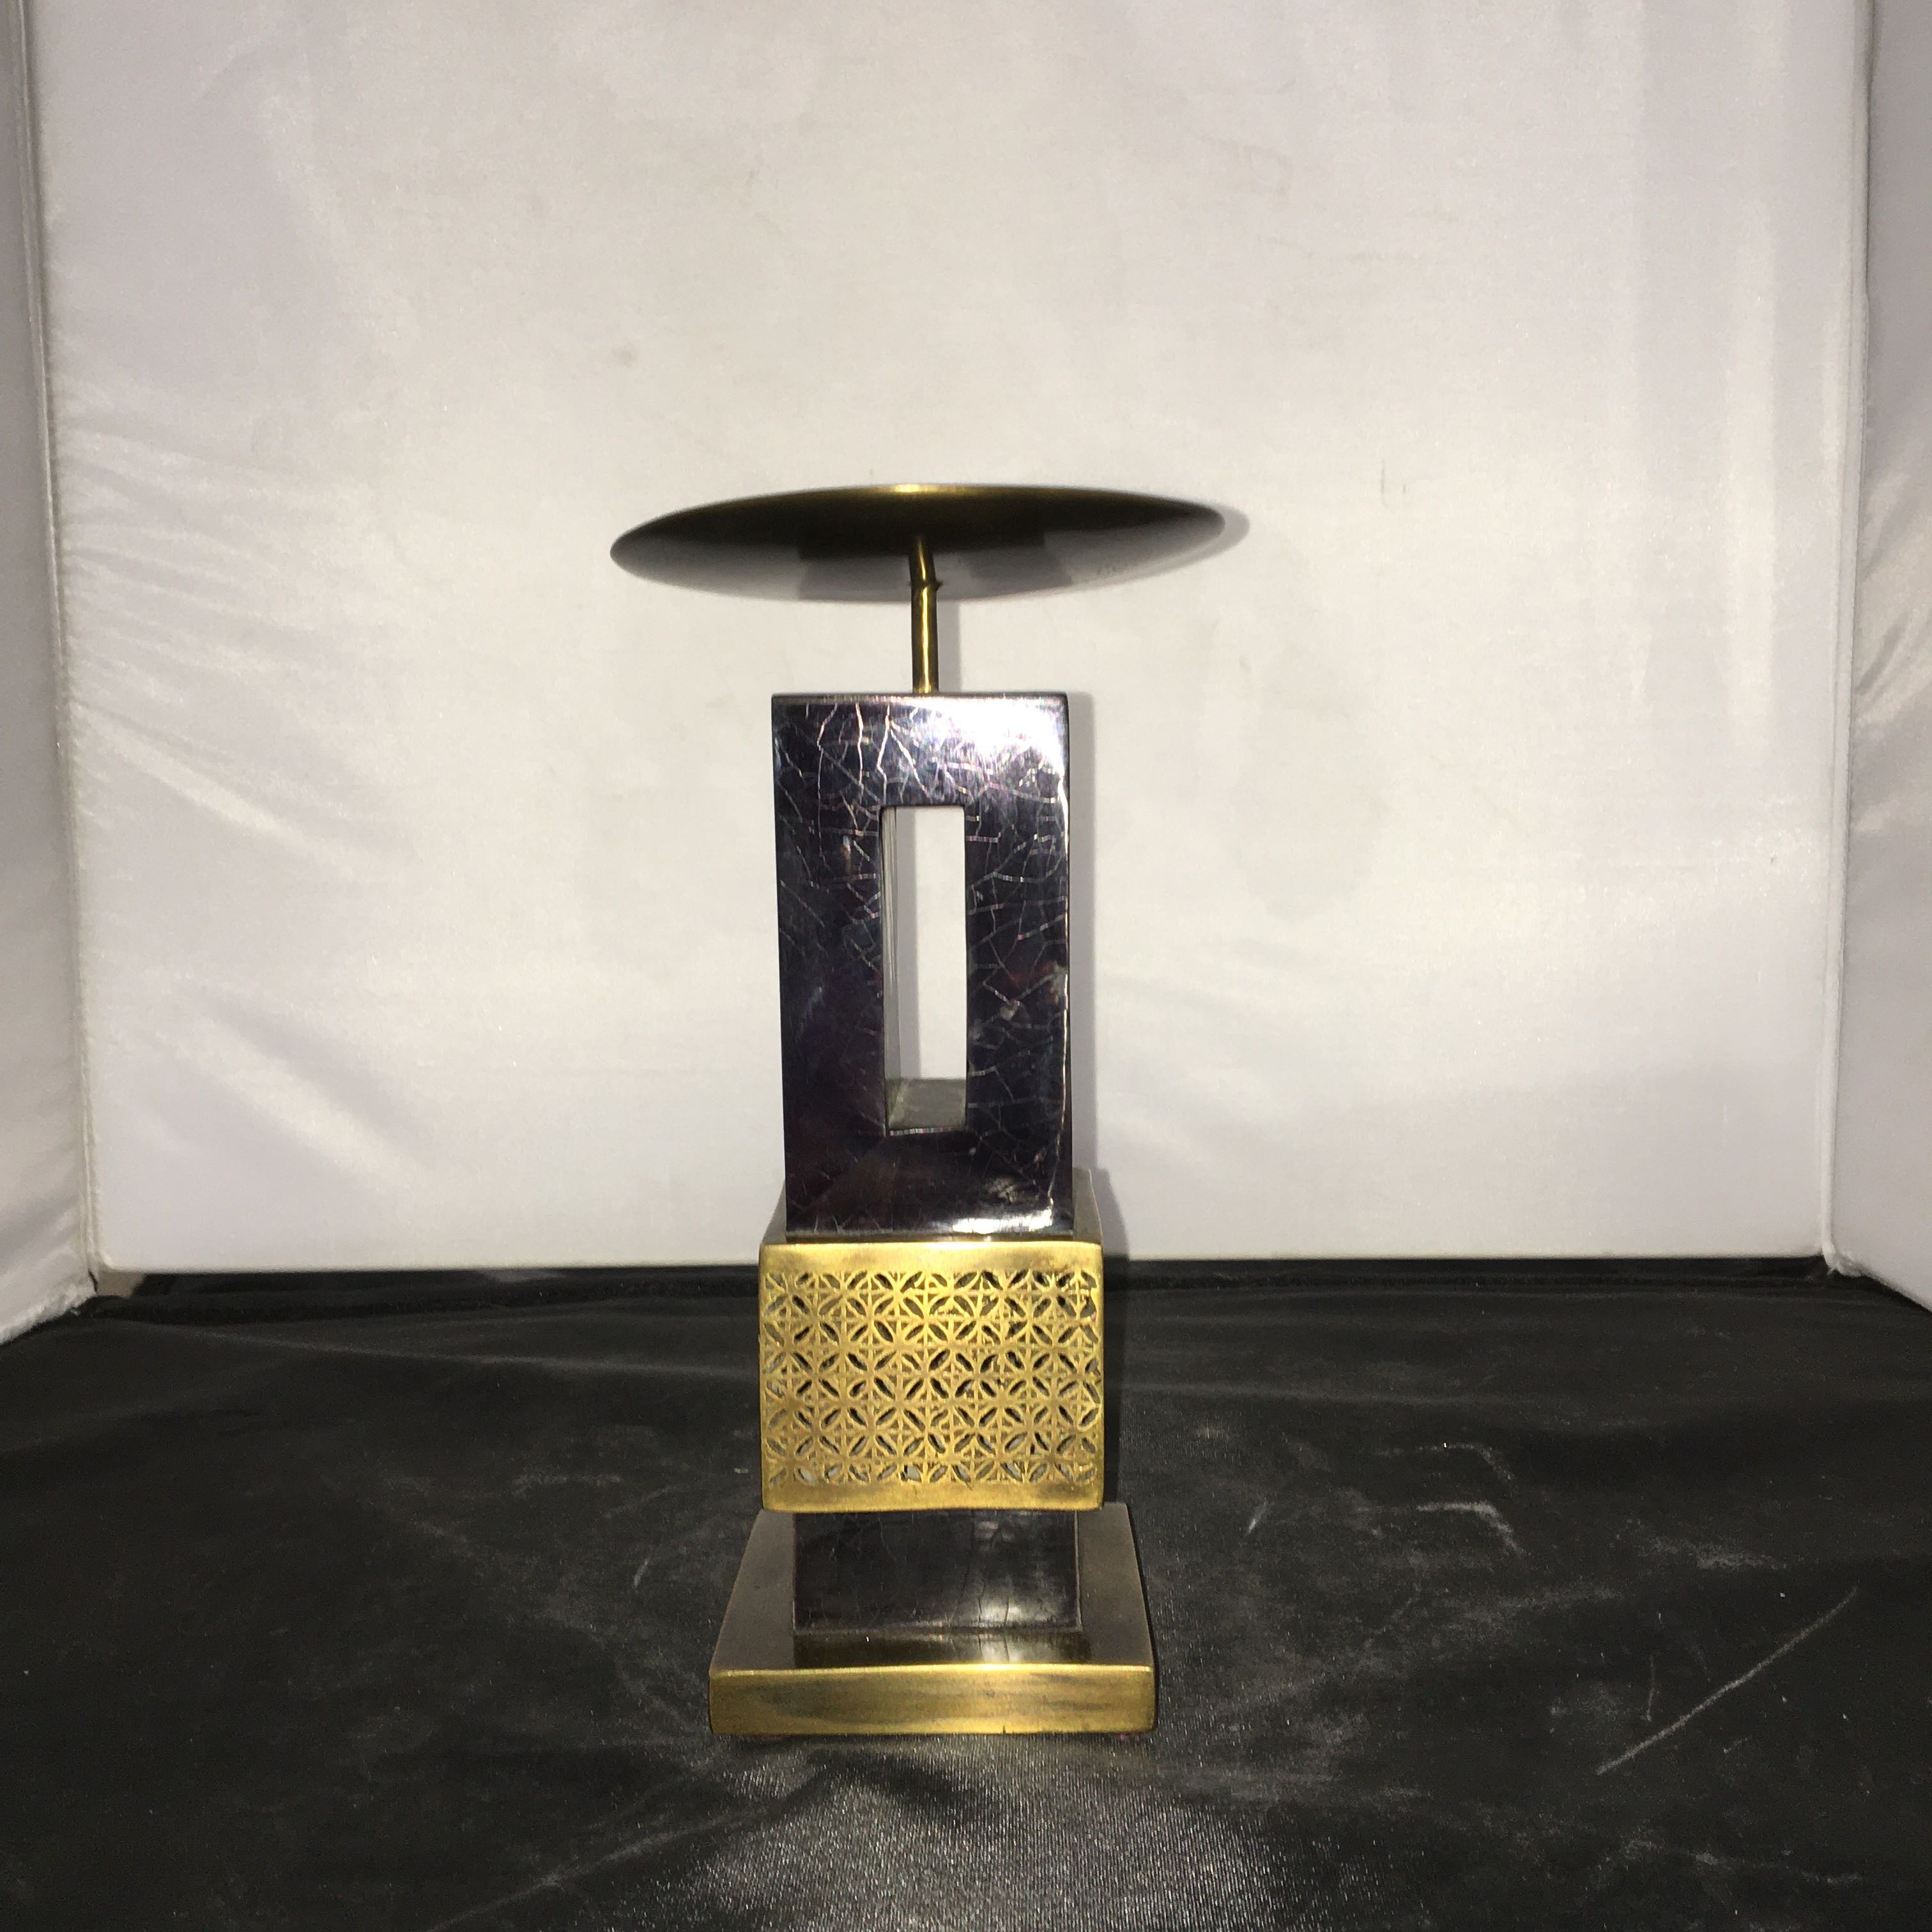 Brass/Bronze Shagreen by R&Y Augousti Paris Candleholder